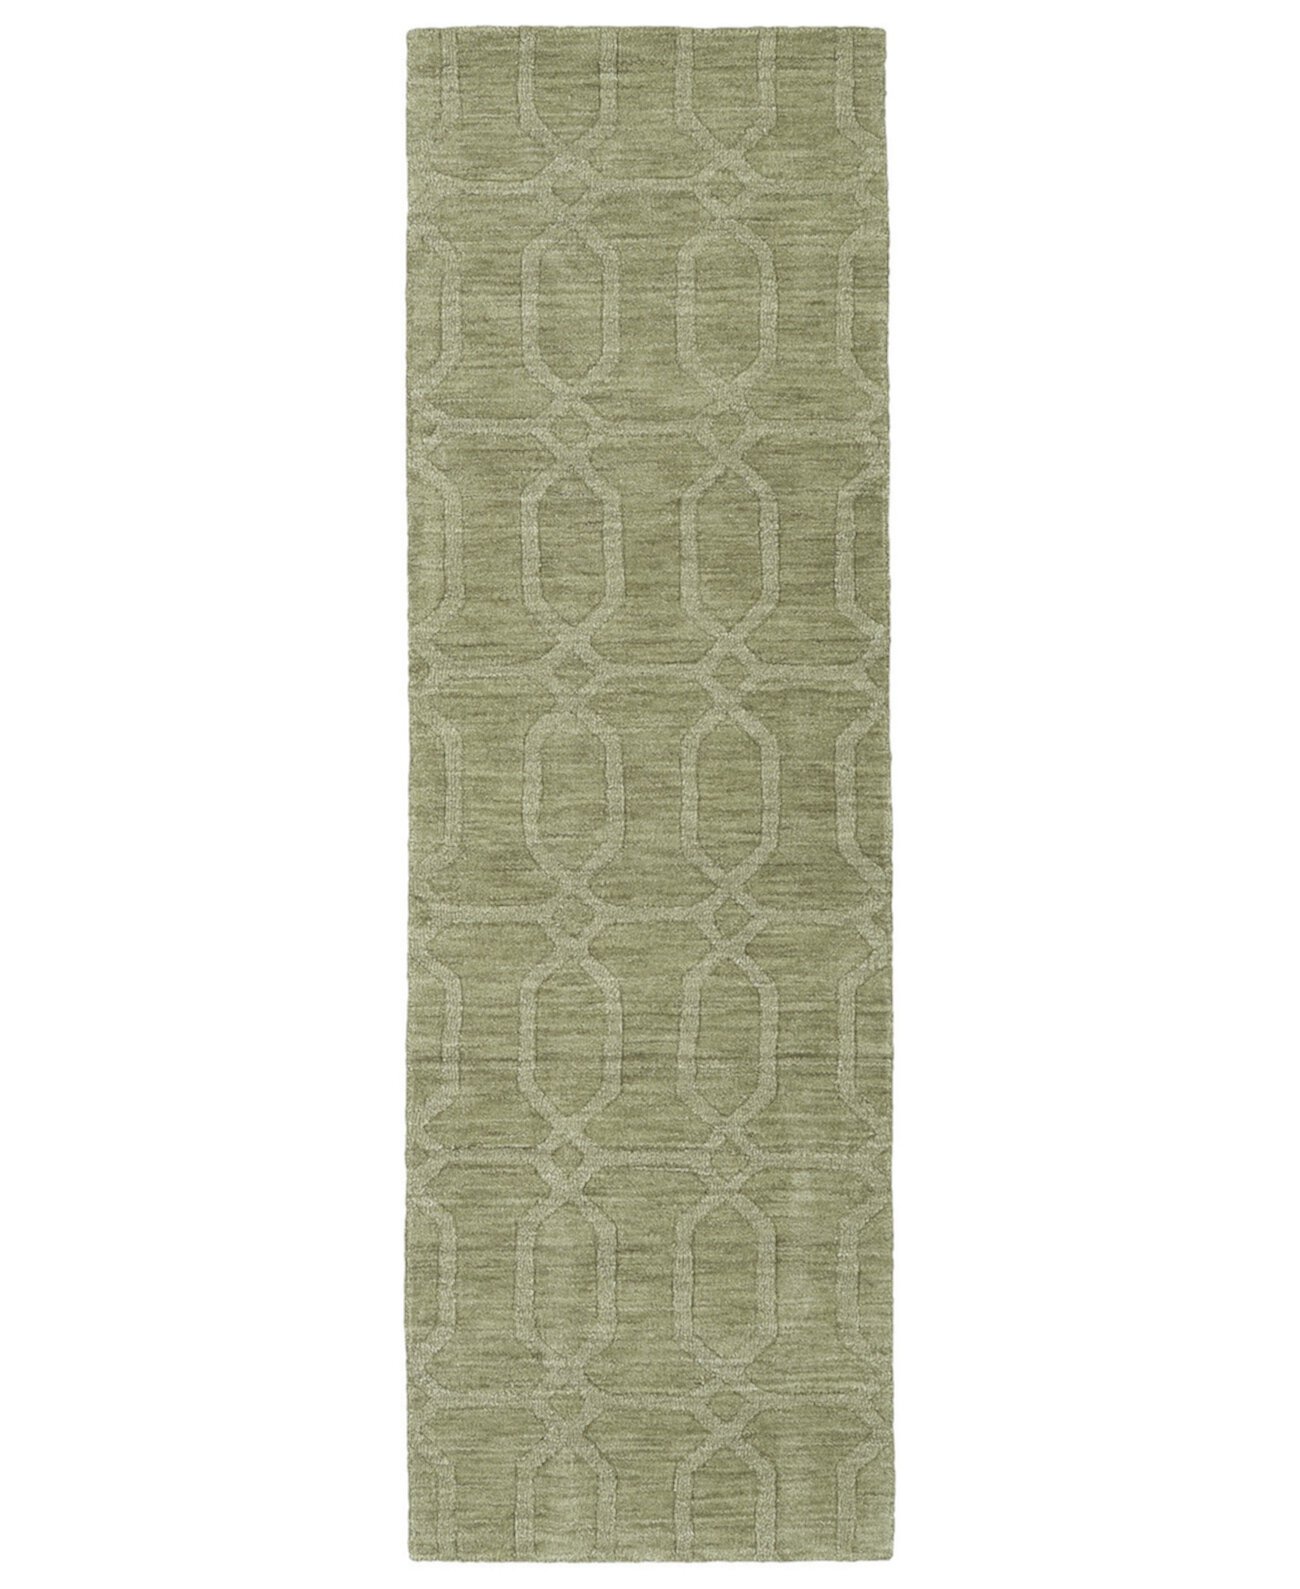 Отпечатки Современный коврик IPM03-59 Sage размером 2 фута 6 x 8 футов Kaleen